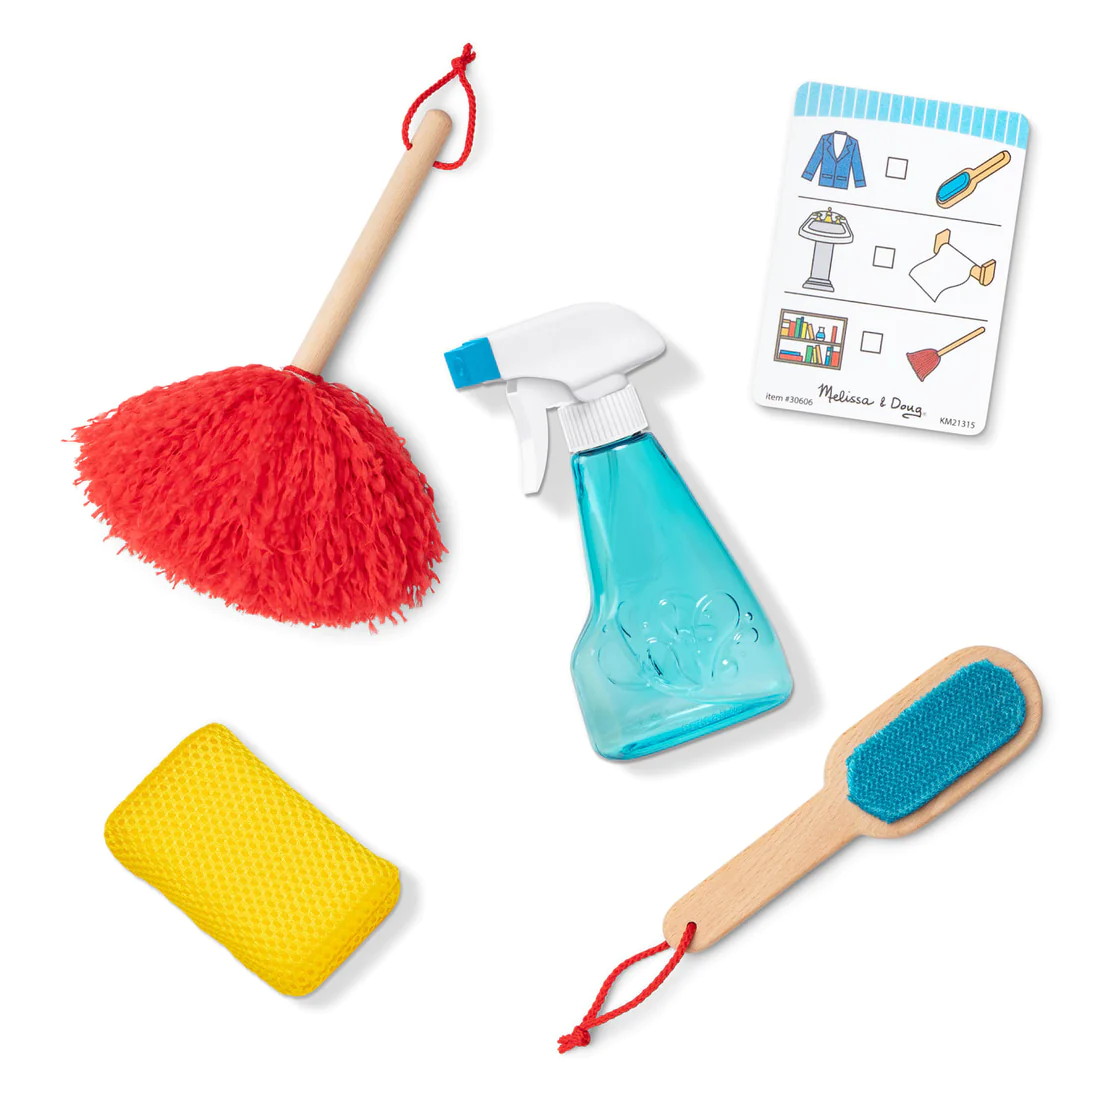 Reinigungsset Deluxe - Kinderspielzeug Staubwedel, Bürste, Schwamm, Sprühflasche. KiTa-Spielewelt